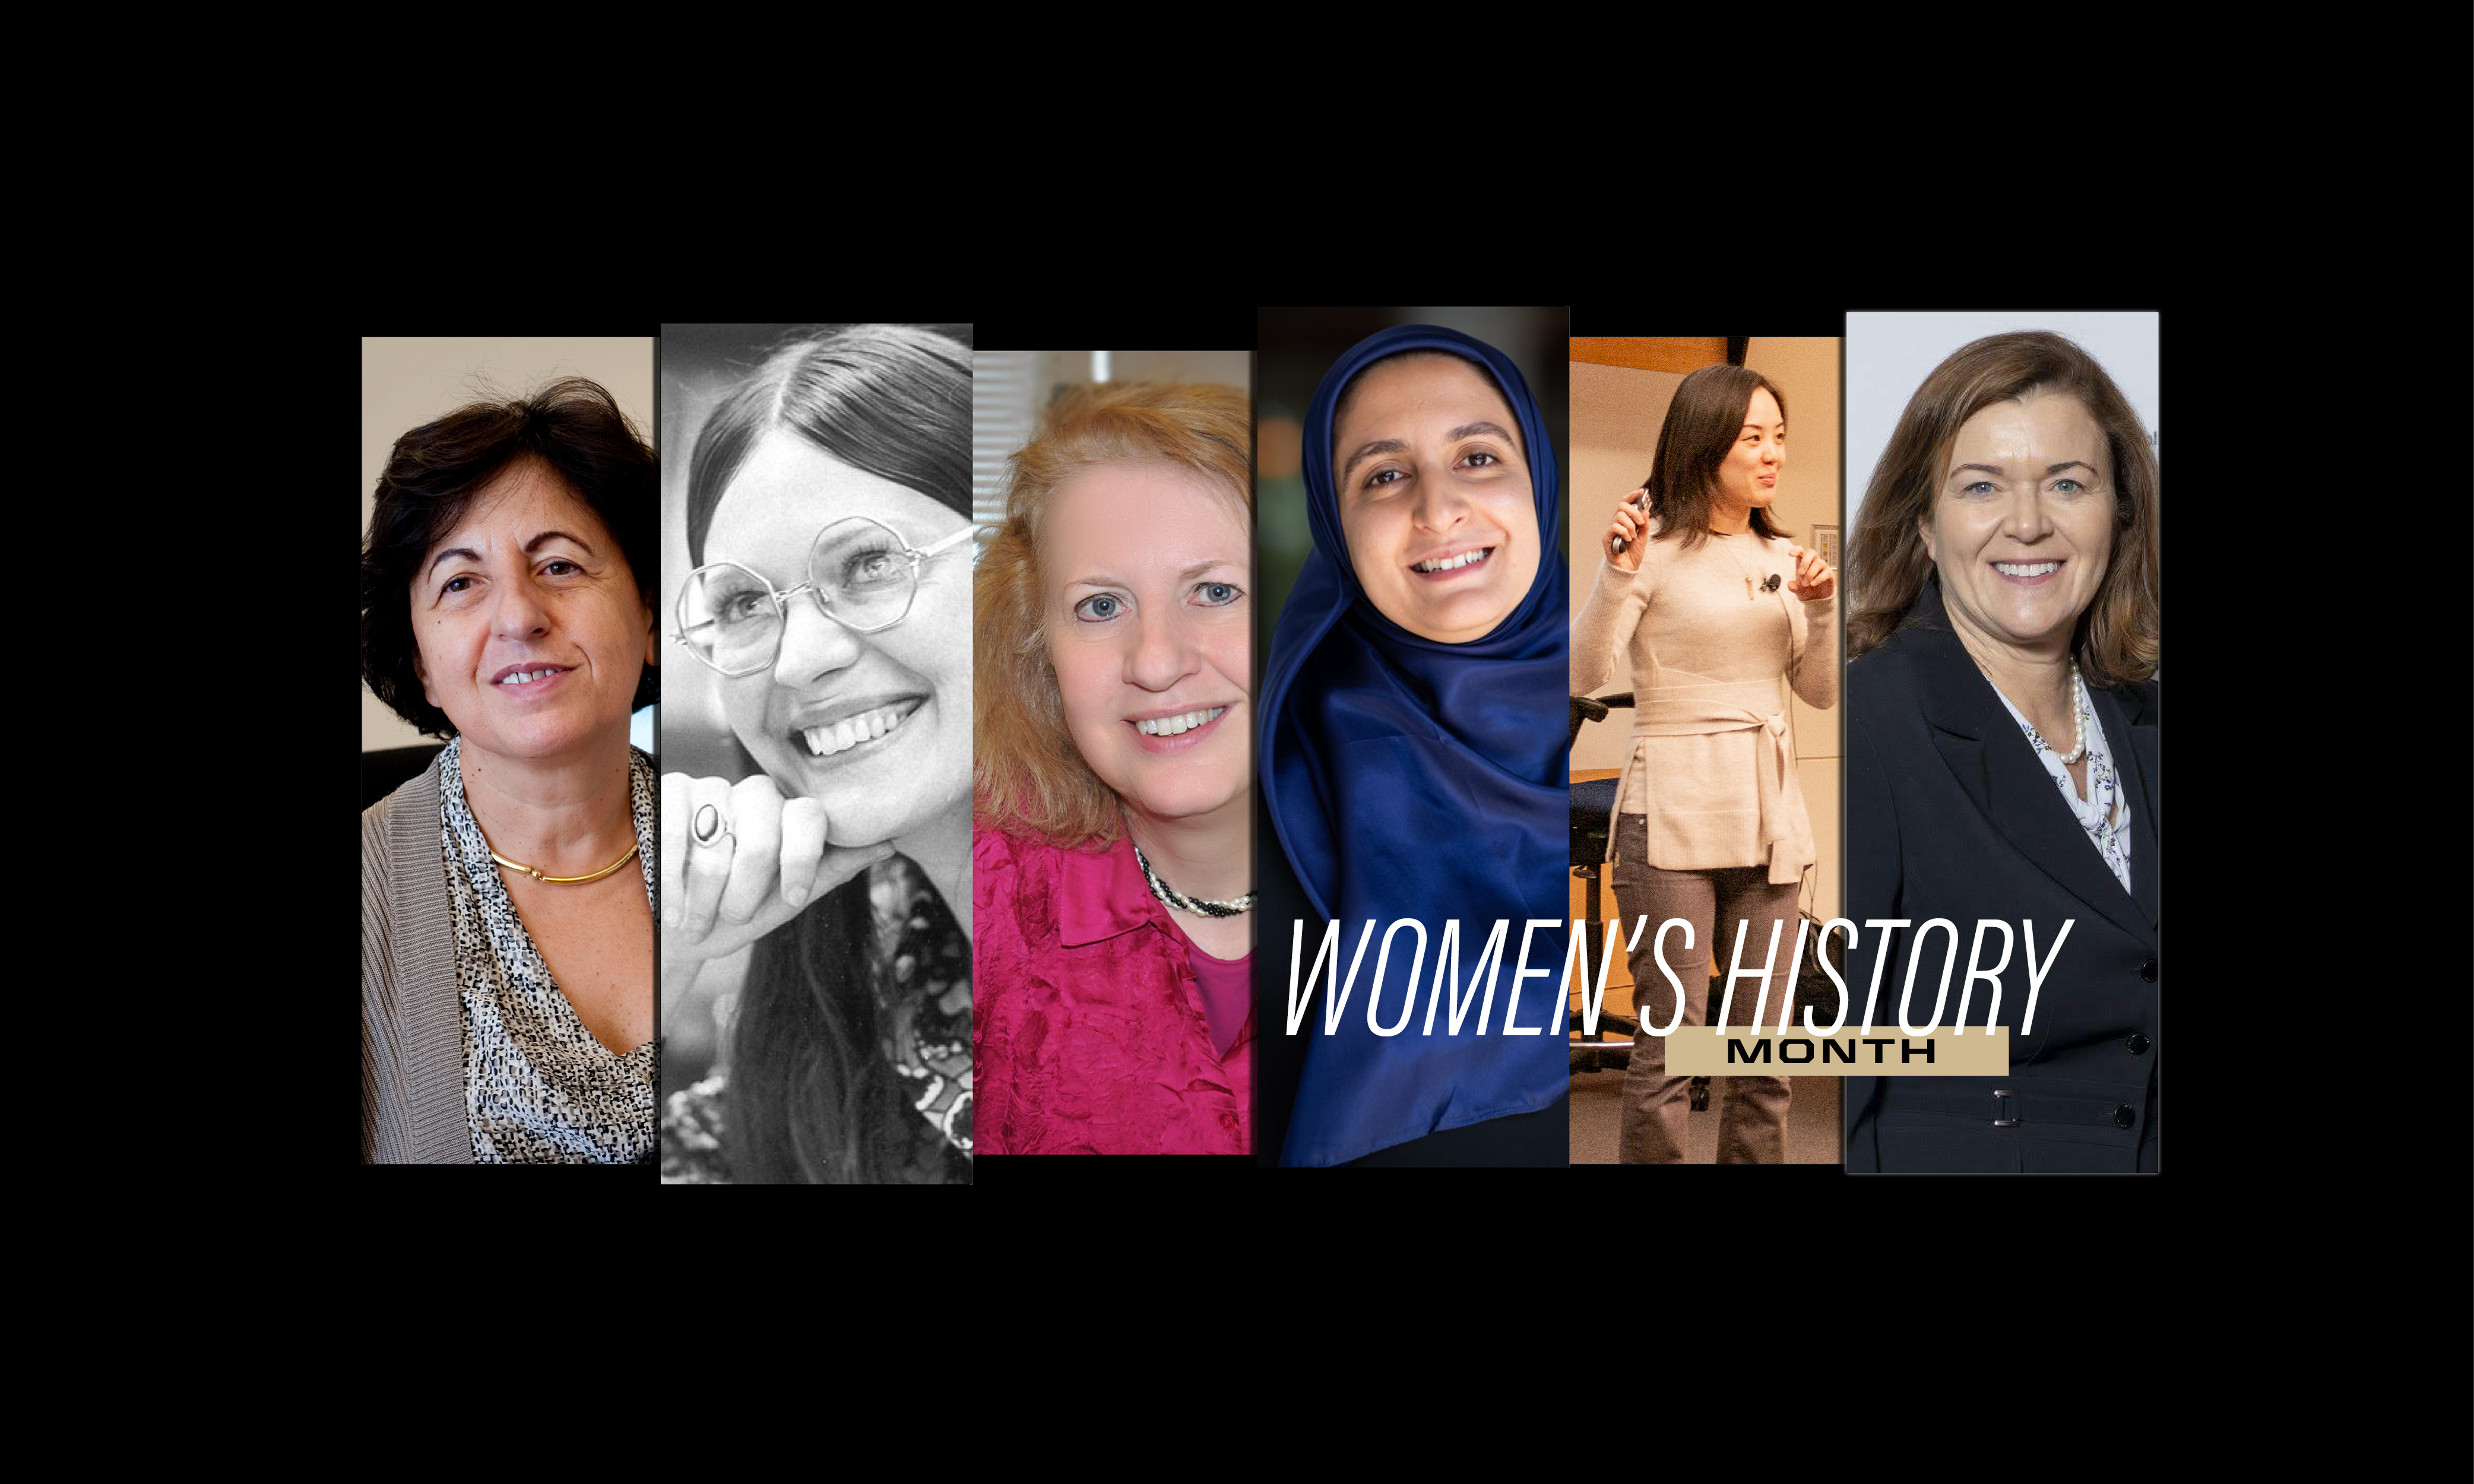 Women's History Month: Professor Elisa Bertino, Professor Dorothy Denning, Professor Susanne Hambrusch, Professor Hoda Eldardiry, Professor Lin Tan, Anne-Marie Buibish